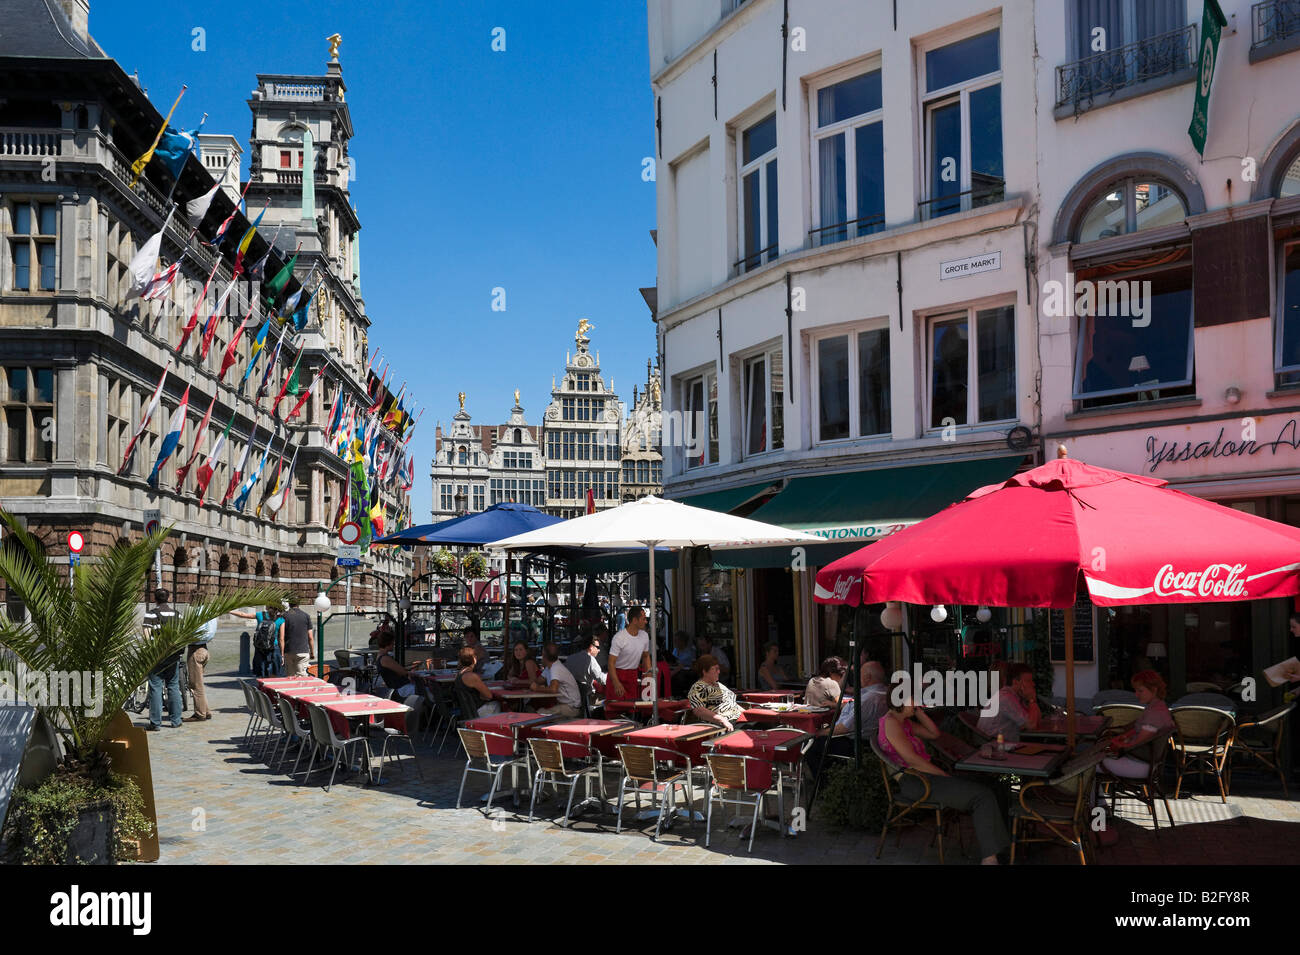 Café en face de l'arrêt le Stadhuis Grote Markt (Grand Place) dans le centre de la vieille ville, Anvers, Belgique Banque D'Images